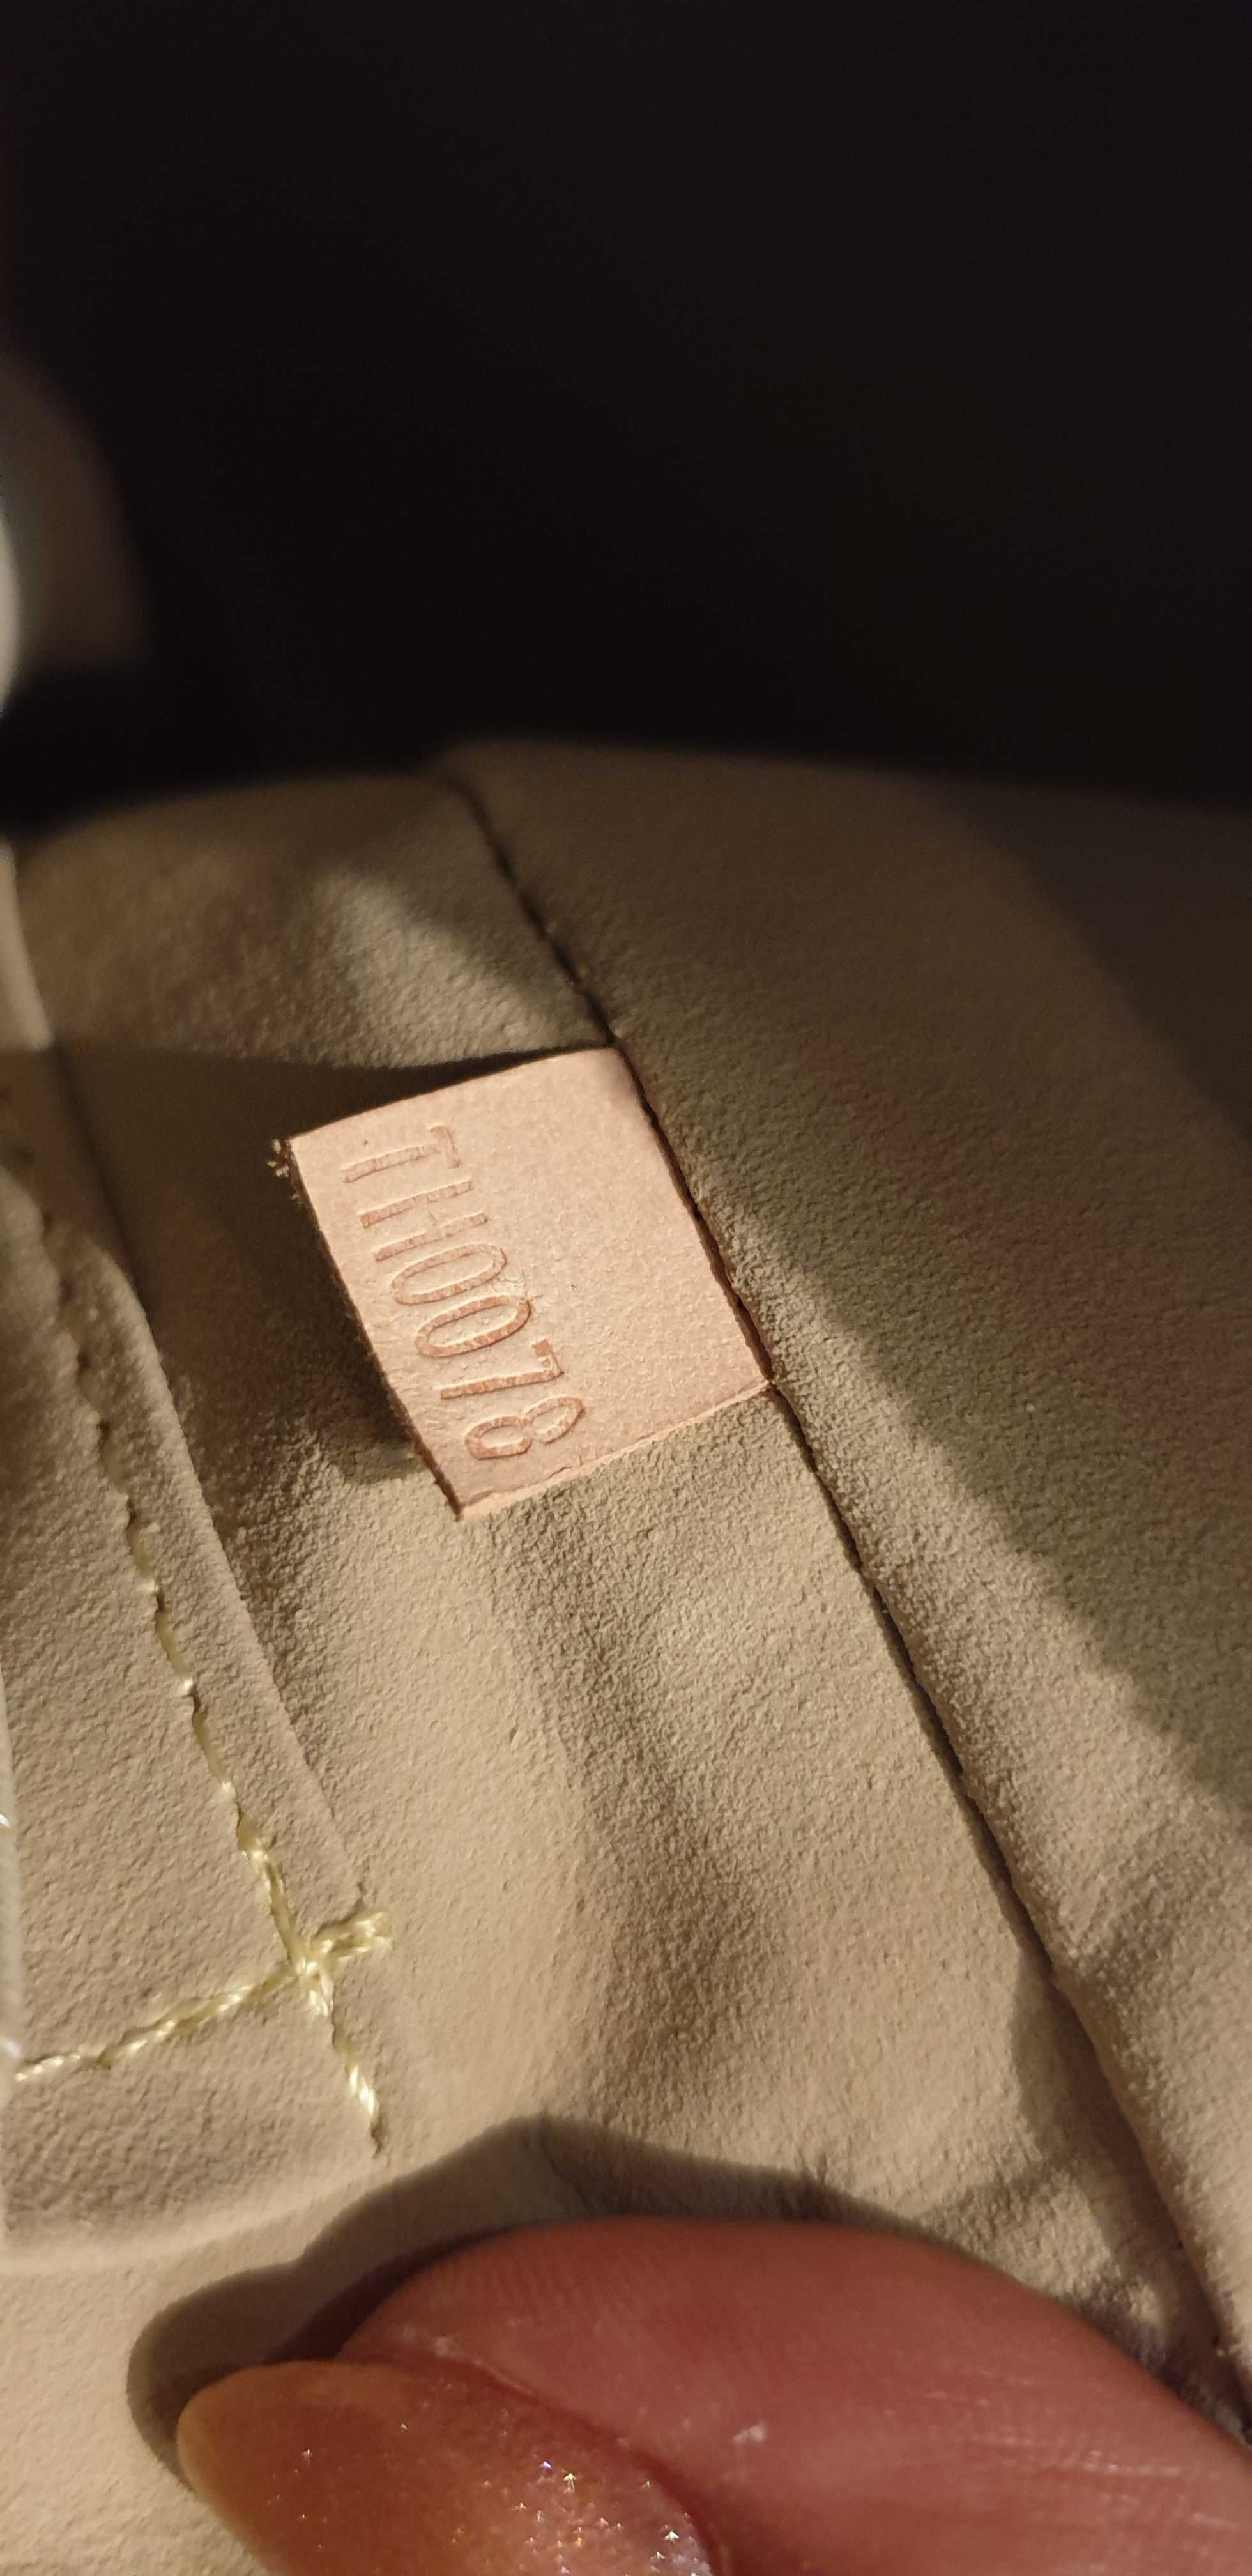 Geanta Louis Vuitton piele naturală noua, cod de autenticitate